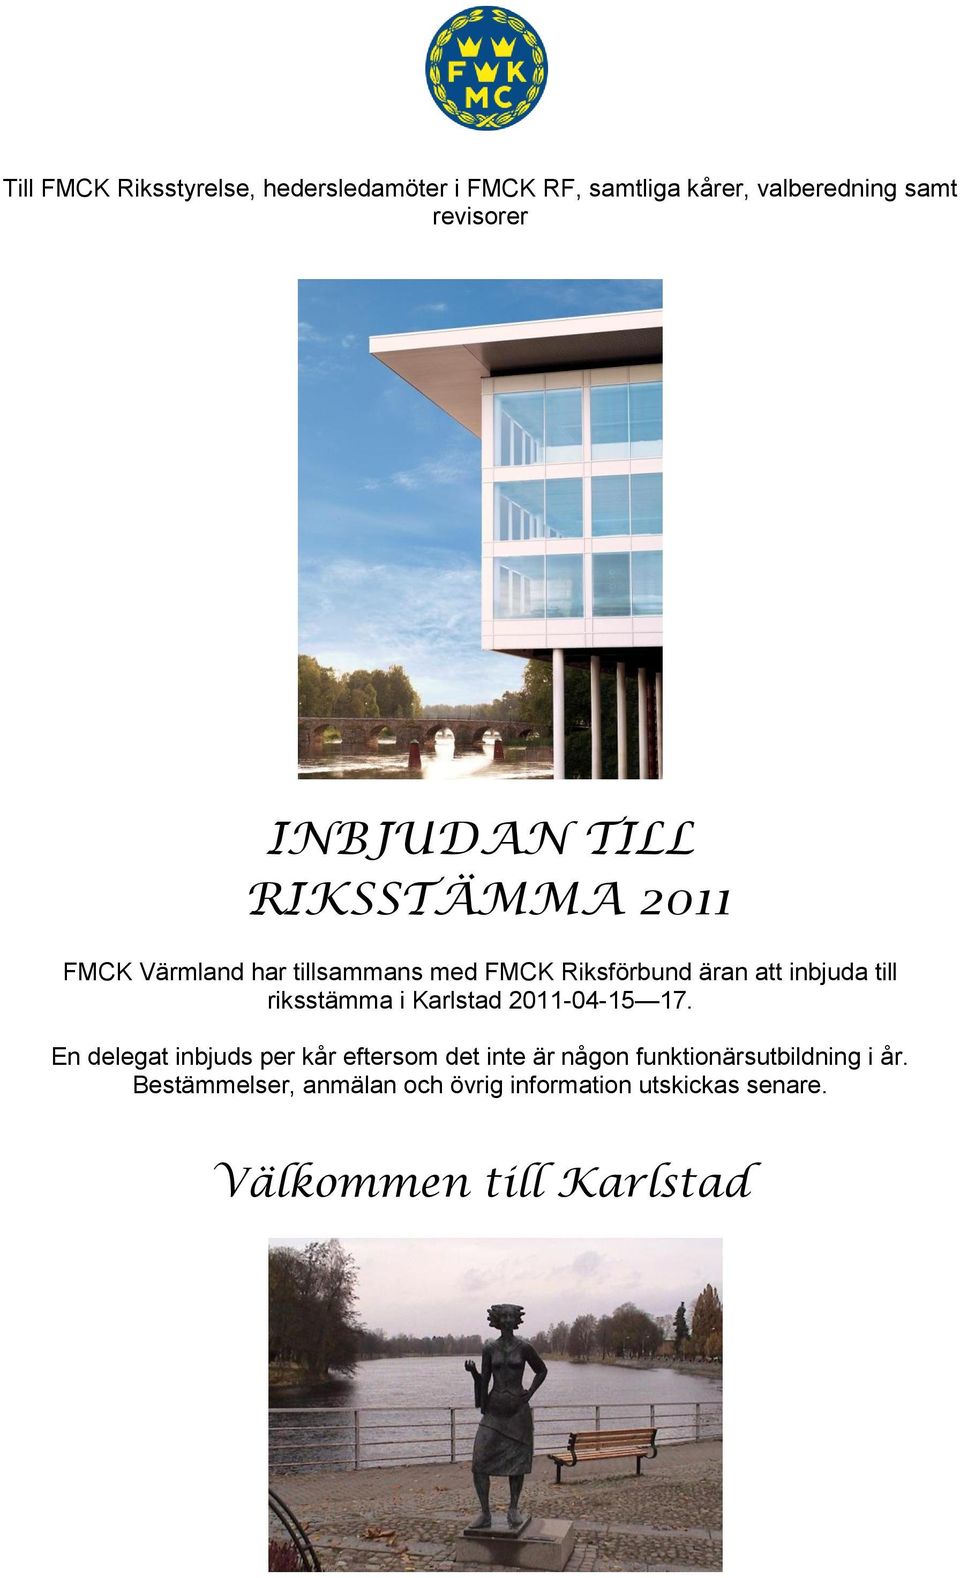 inbjuda till riksstämma i Karlstad 2011-04-15 17.